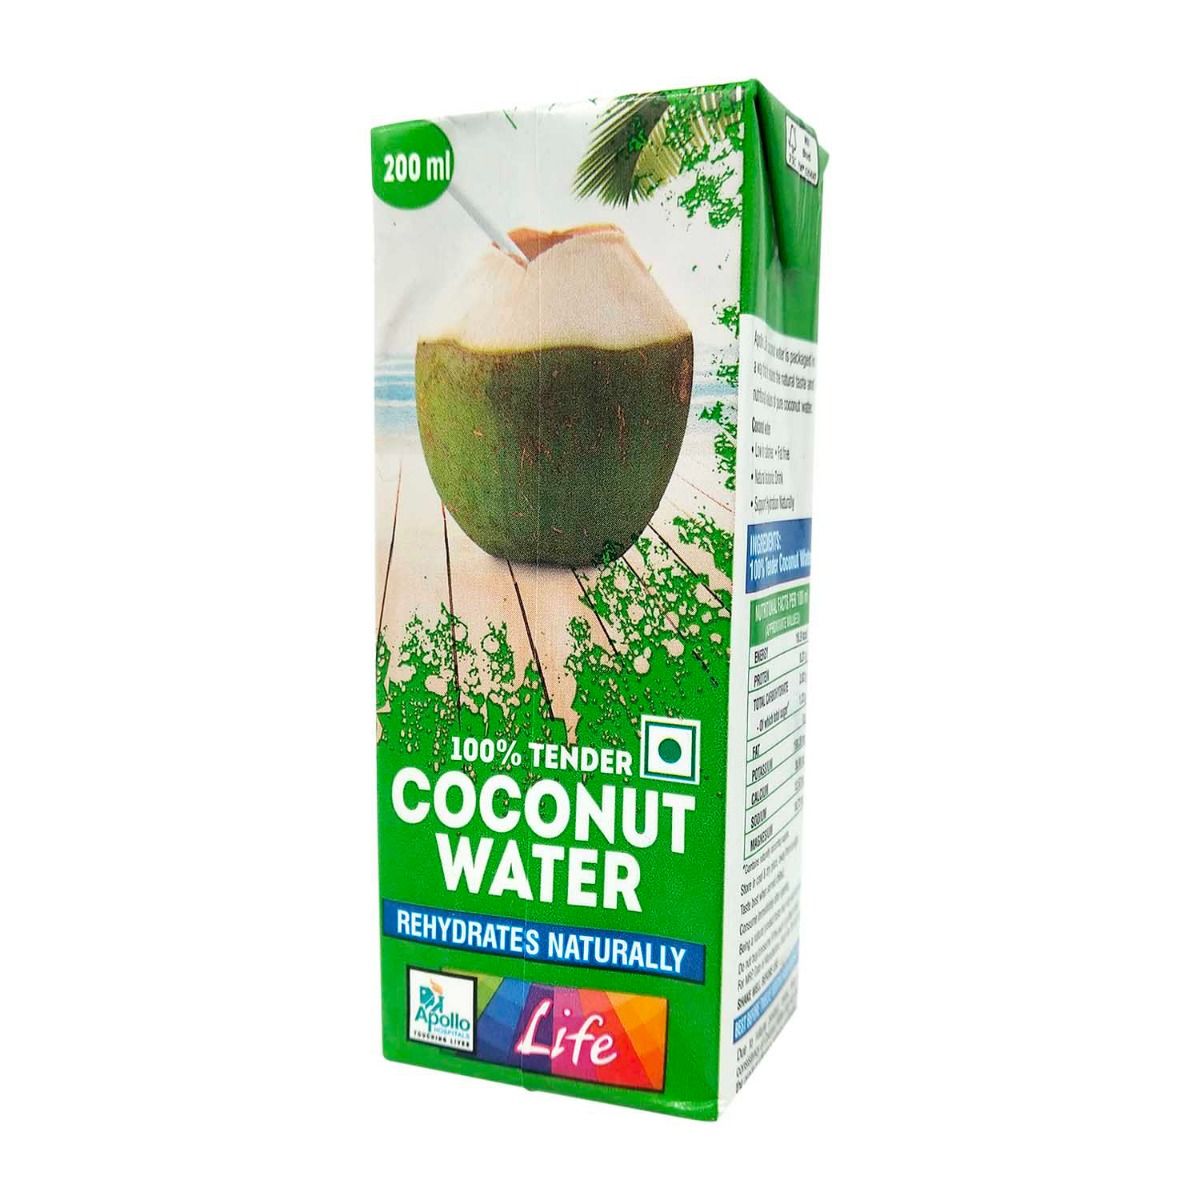 Buy Apollo Pharmacy Coconut Water, 200 ml Online